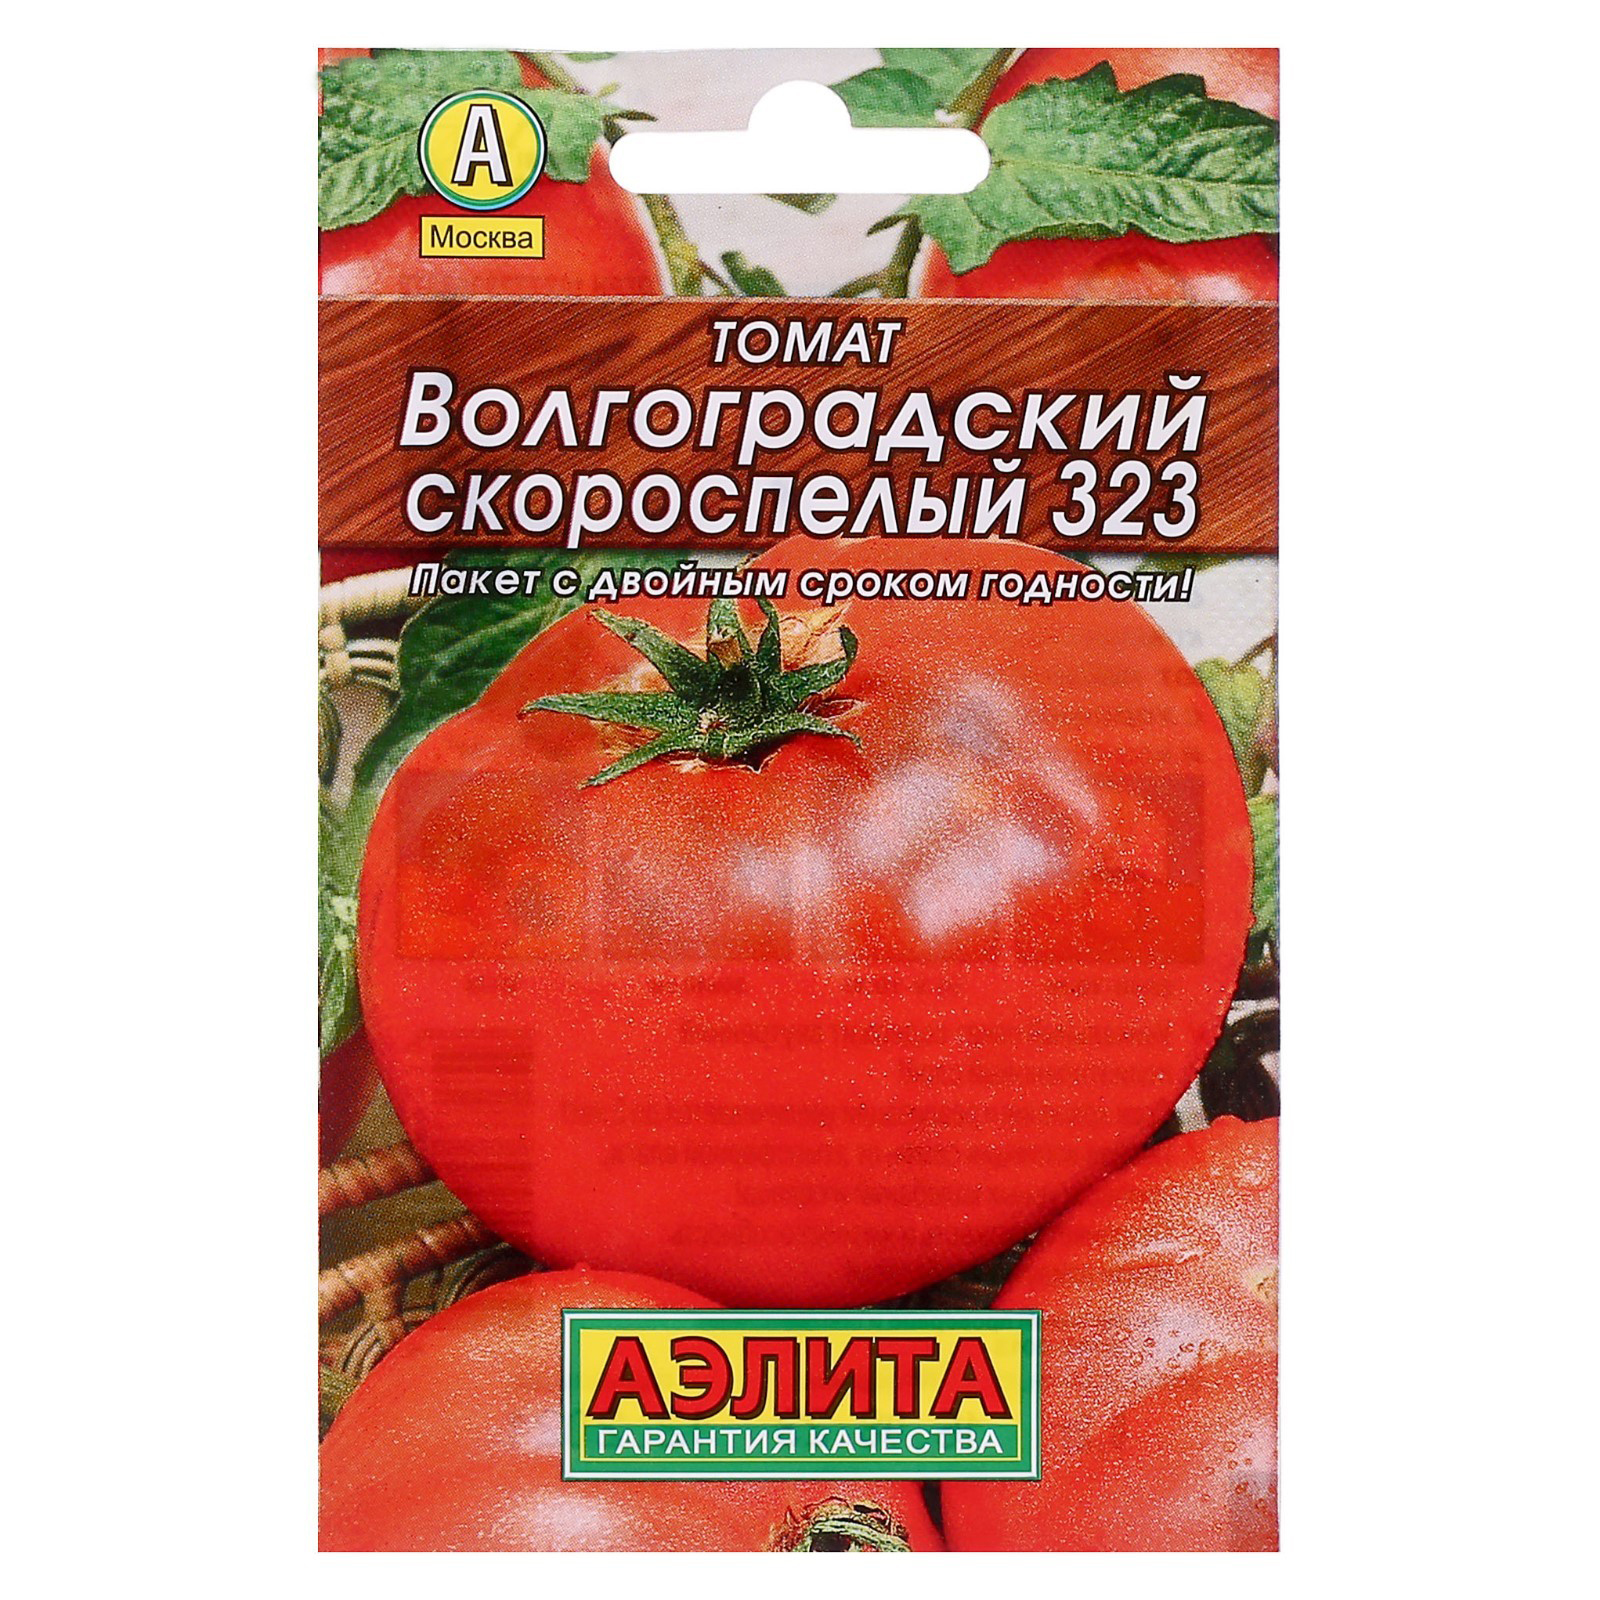 Название семян помидор. Томат Волгоградский скороспелый 323. Томат Волгоградский скороспелый 323 огородное изобилие.